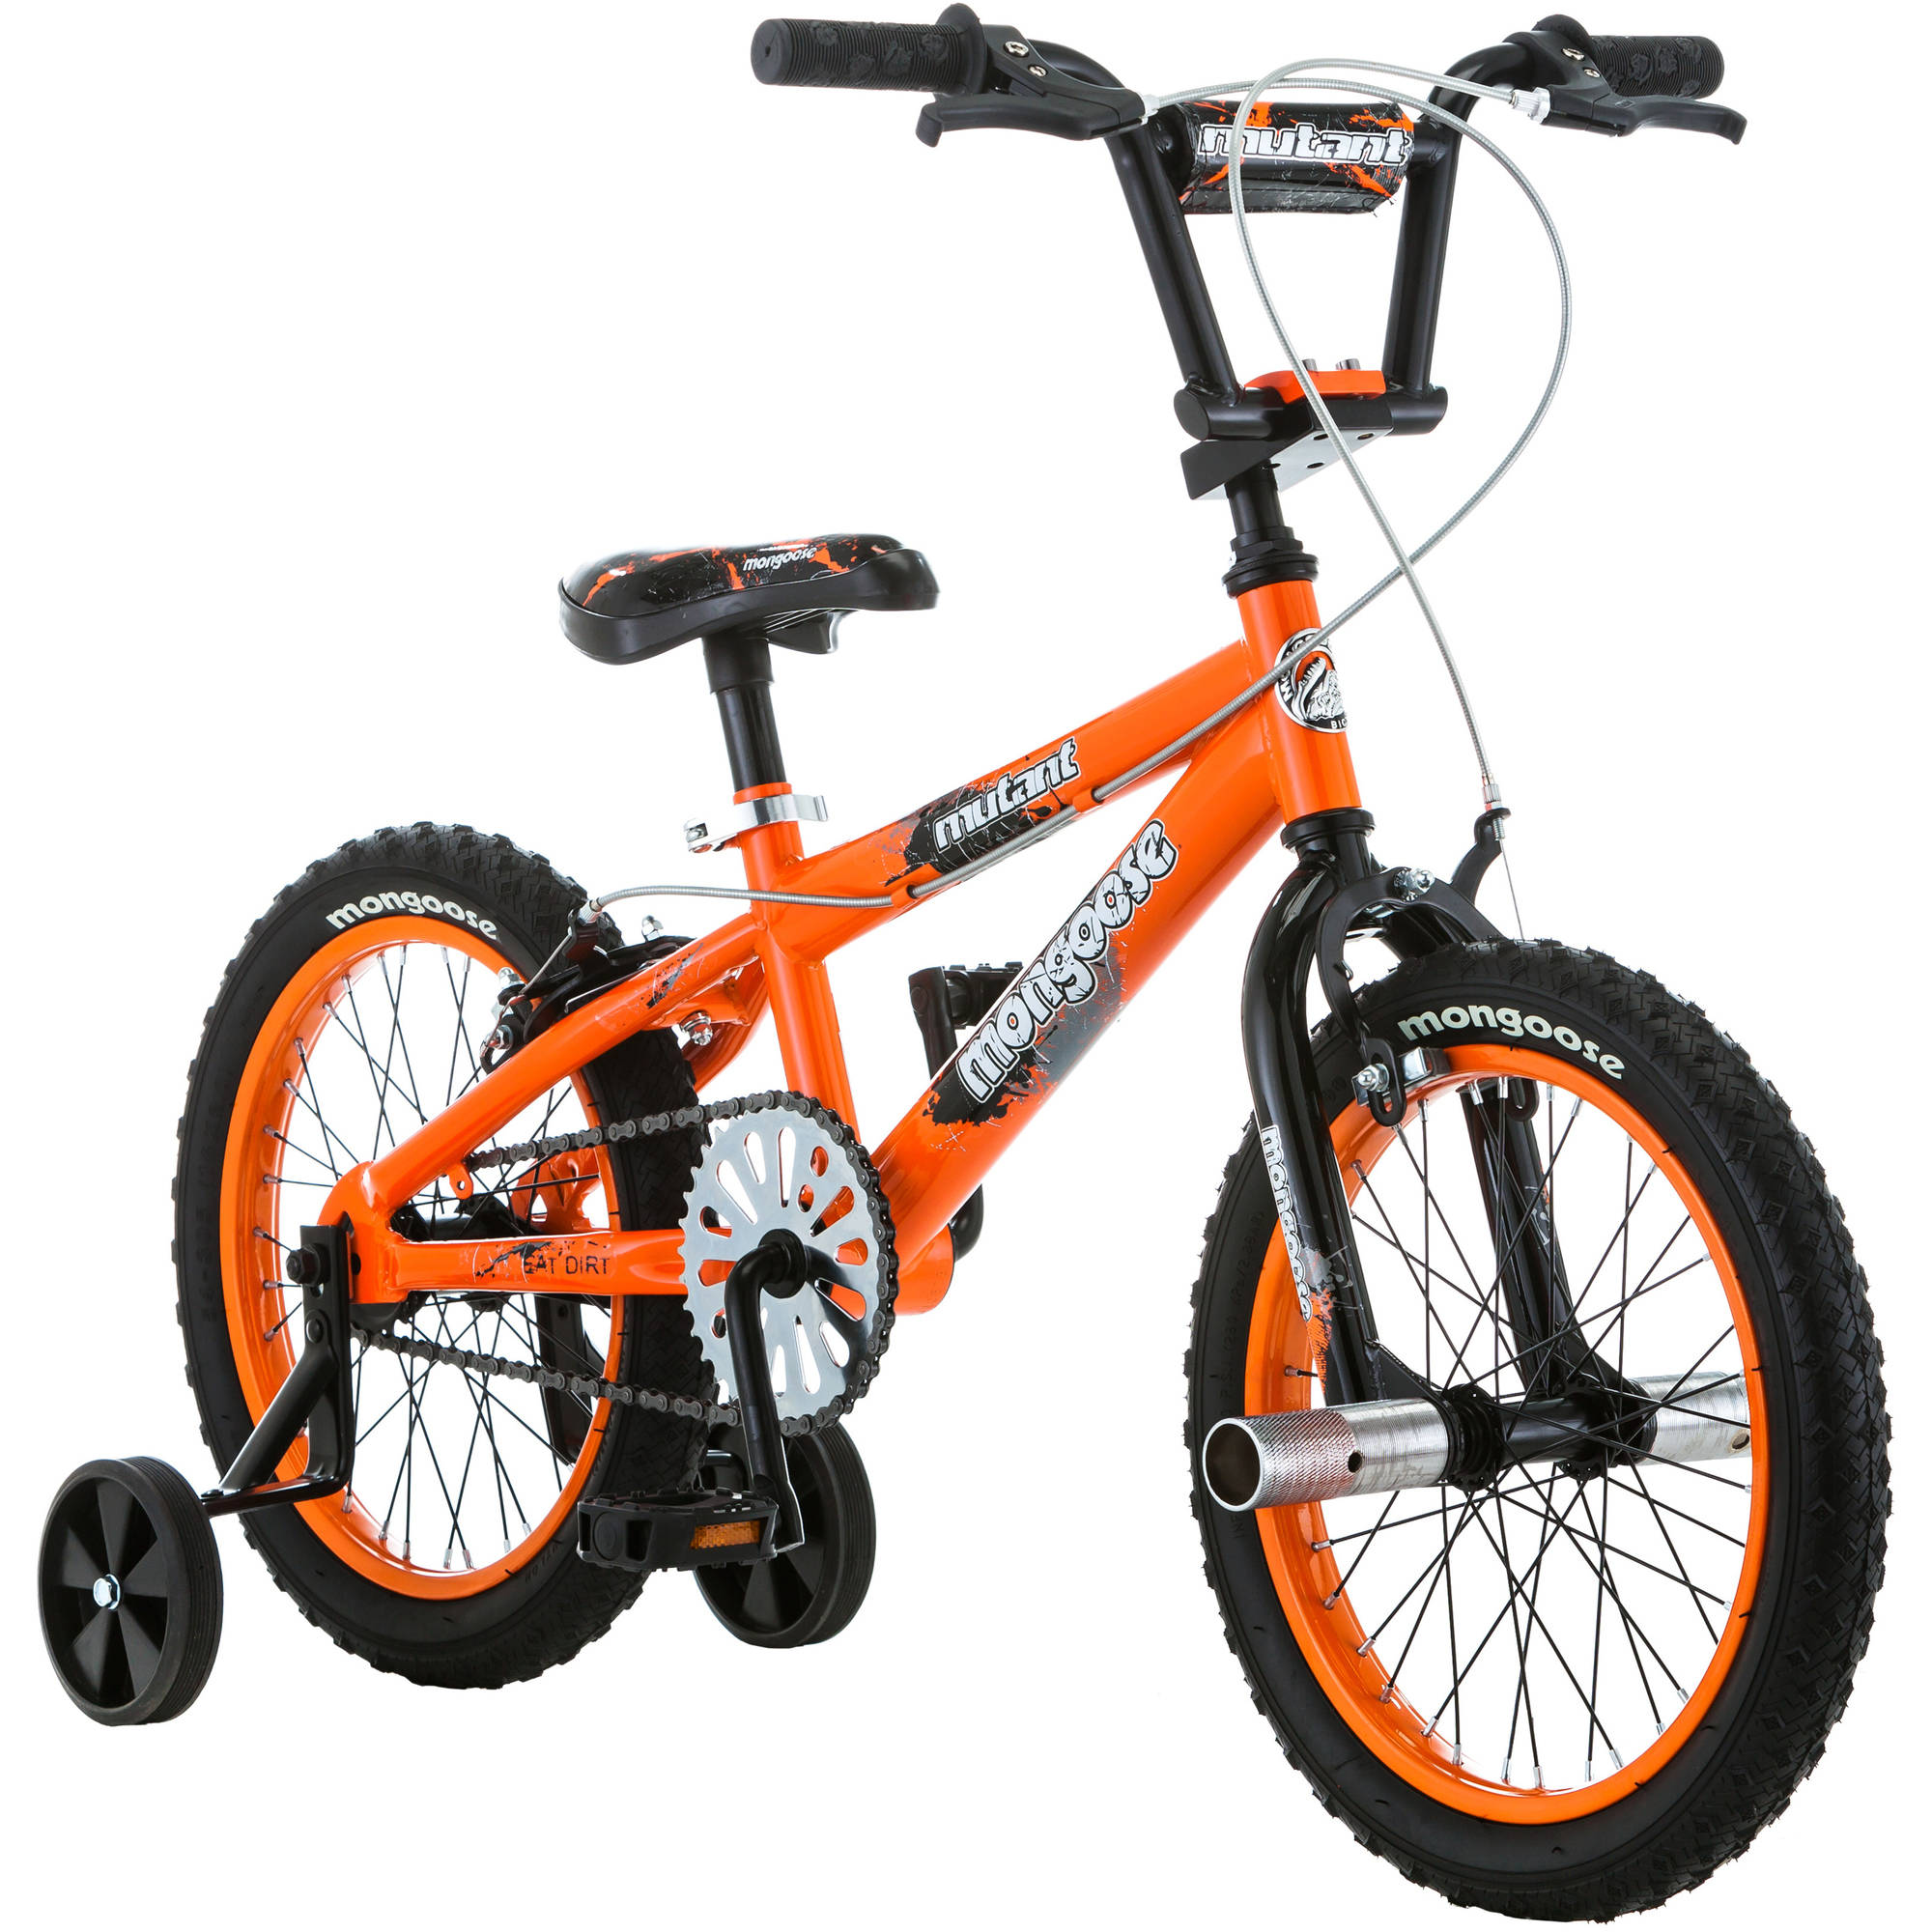 16" Mongoose Mutant Boys' Bike, Orange - image 1 of 7